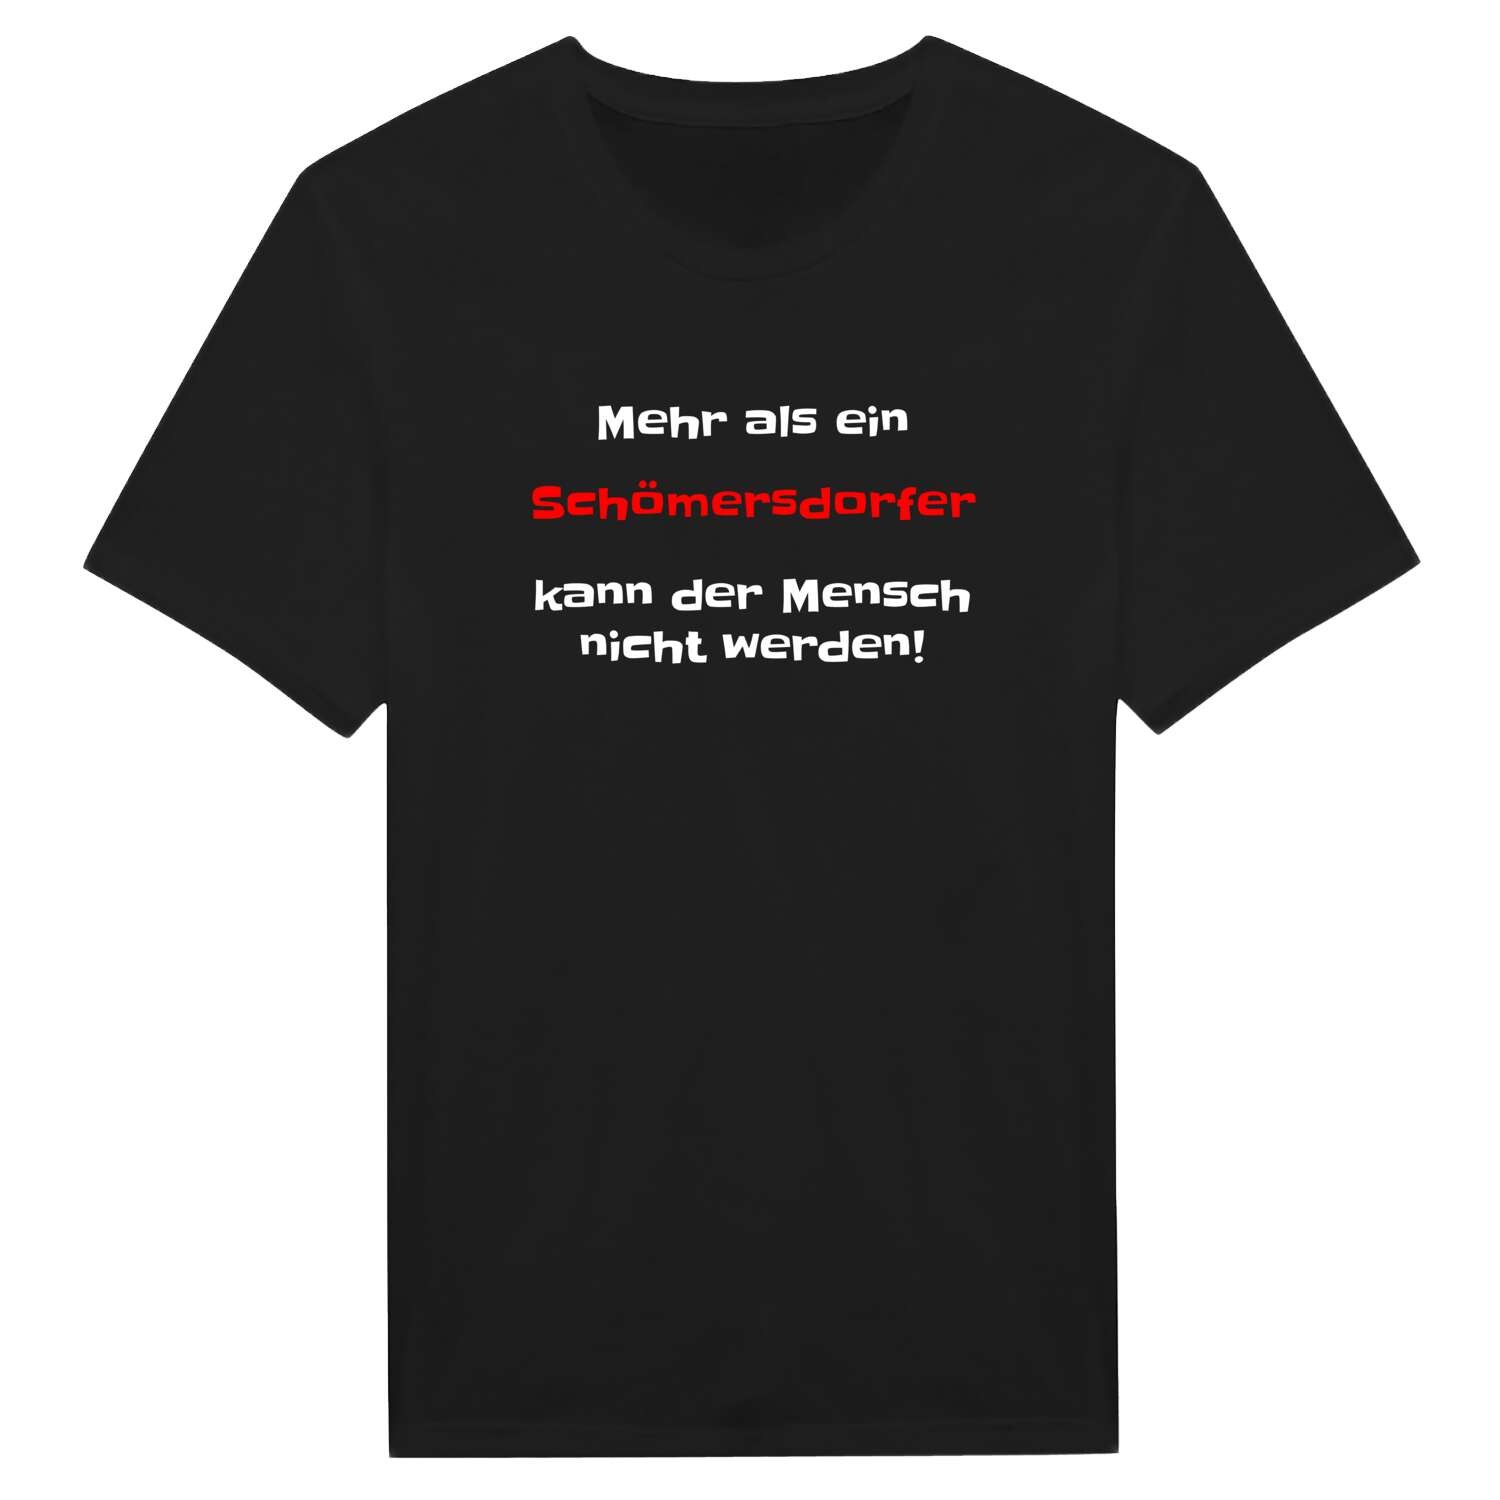 Schömersdorf T-Shirt »Mehr als ein«